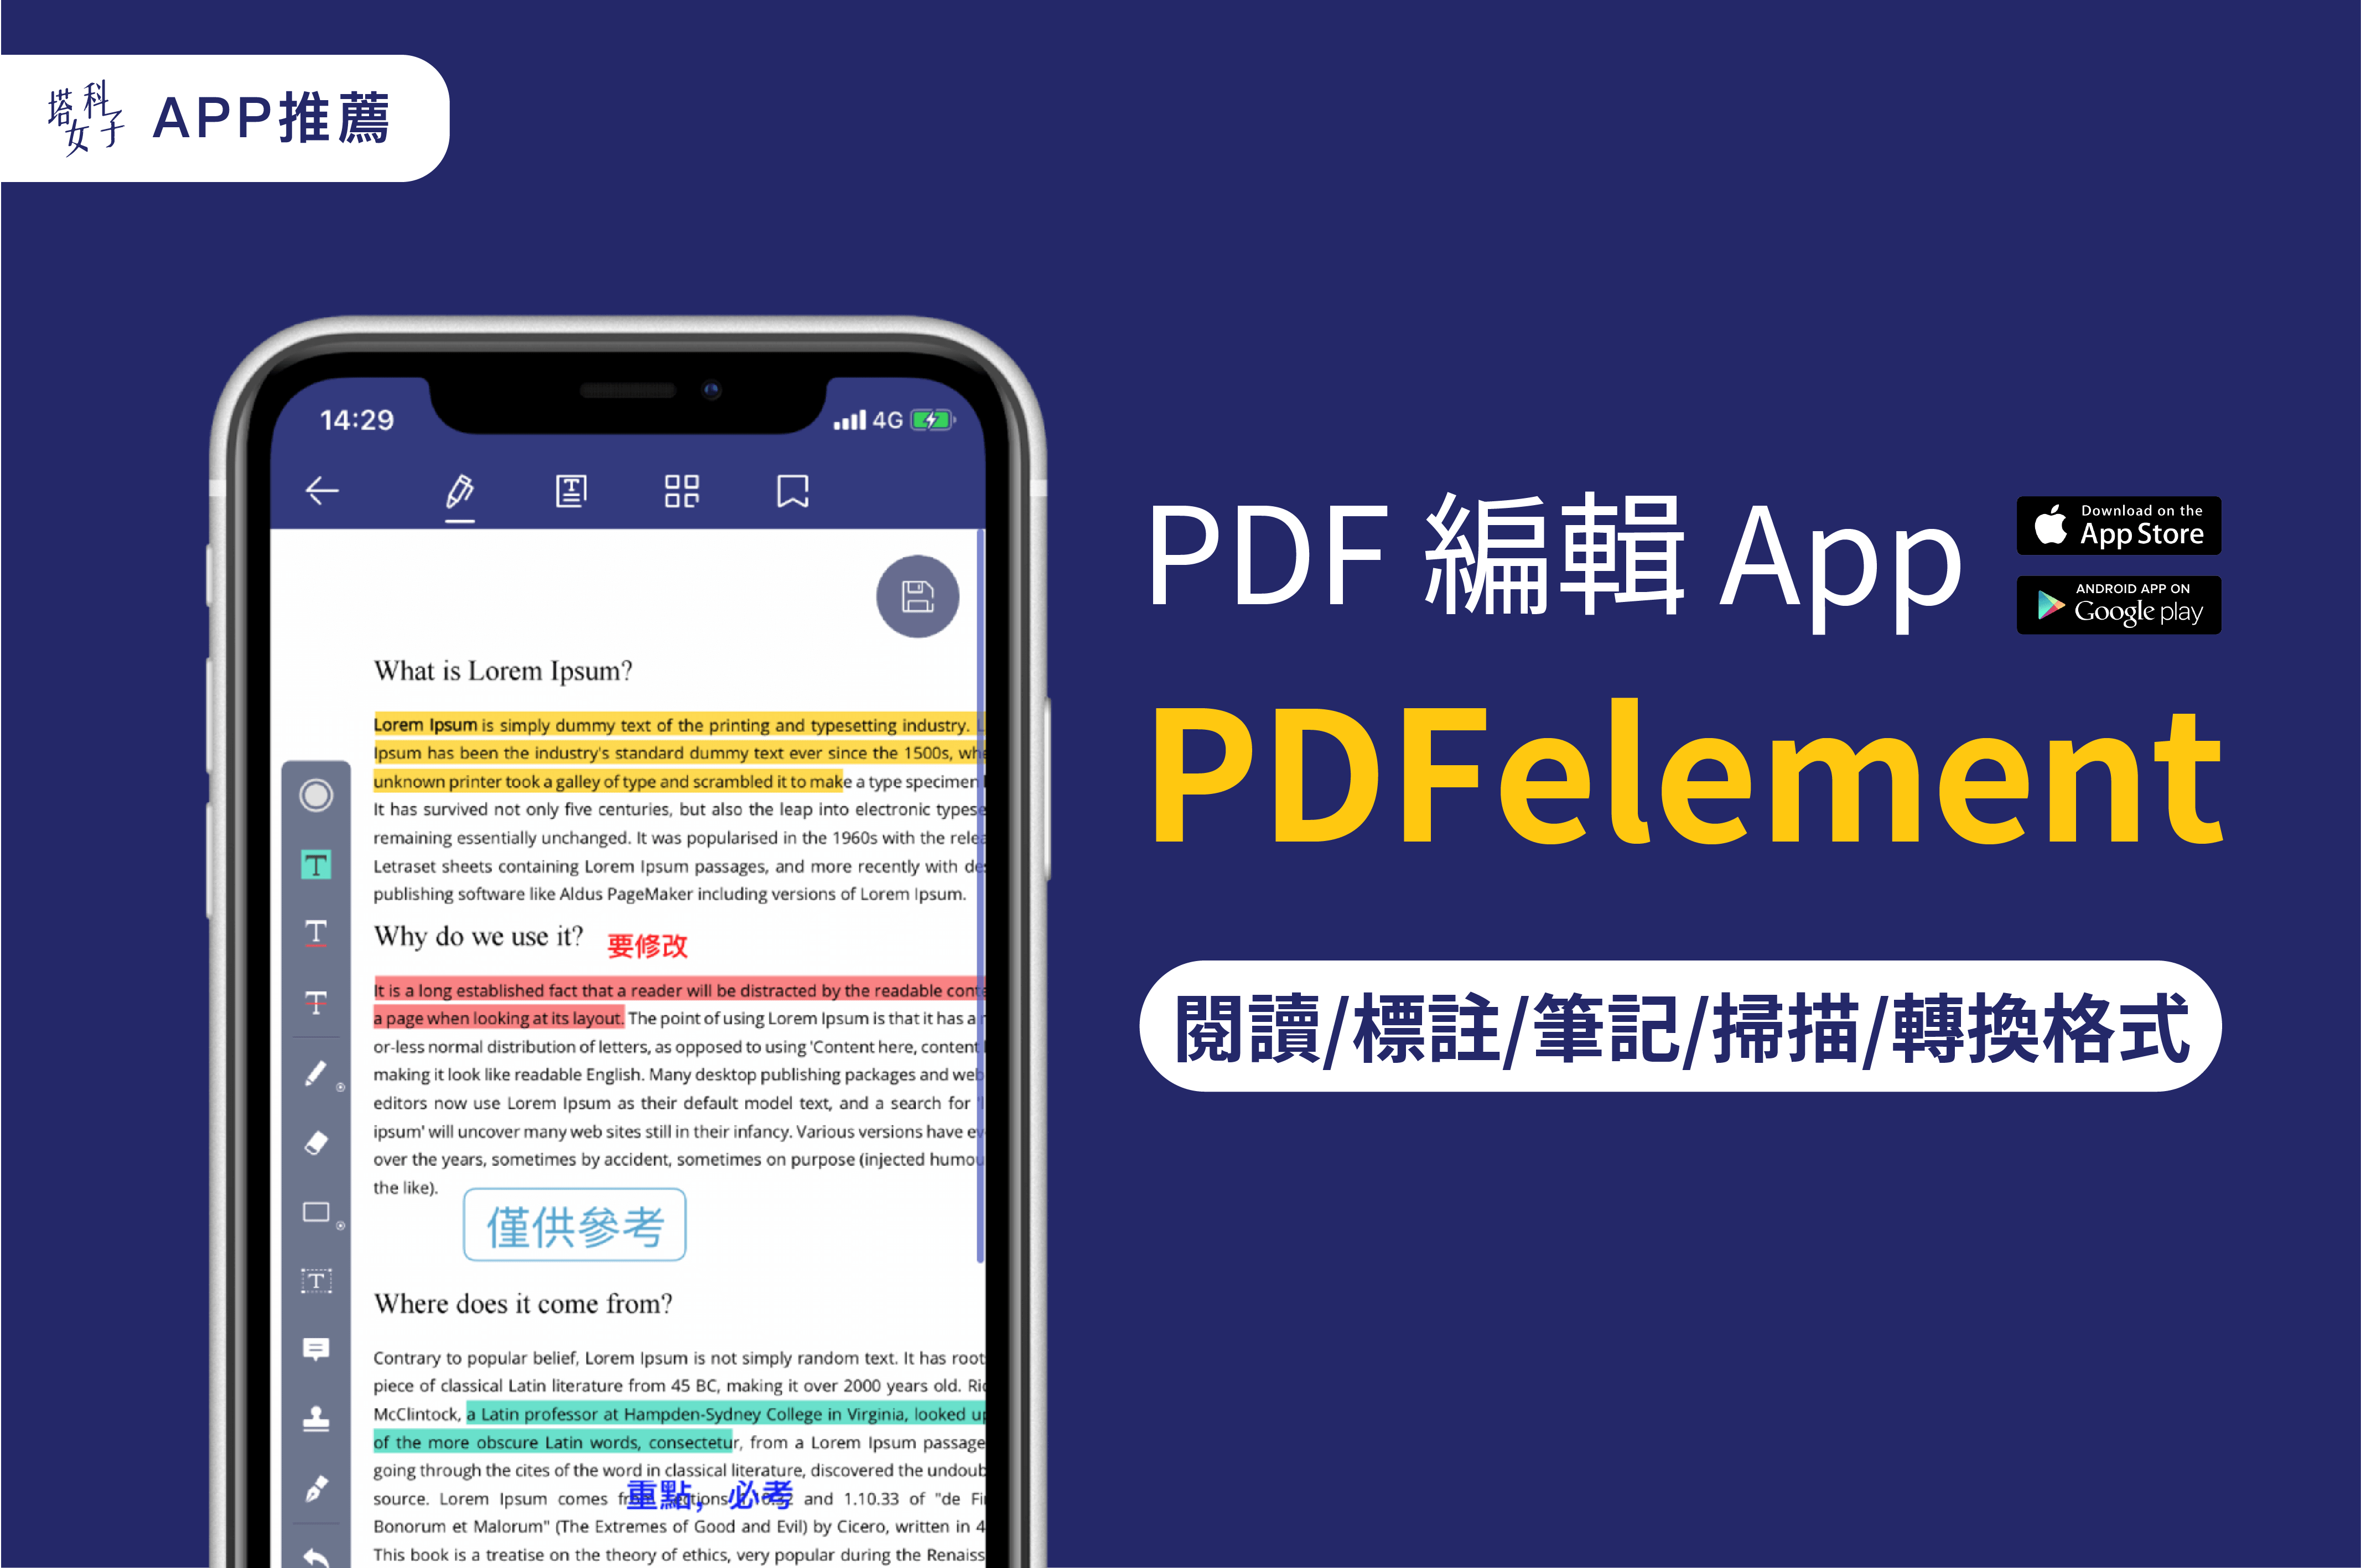 PDF 編輯 App - PDFelement，閱讀/標註/筆記/掃描/轉換格式